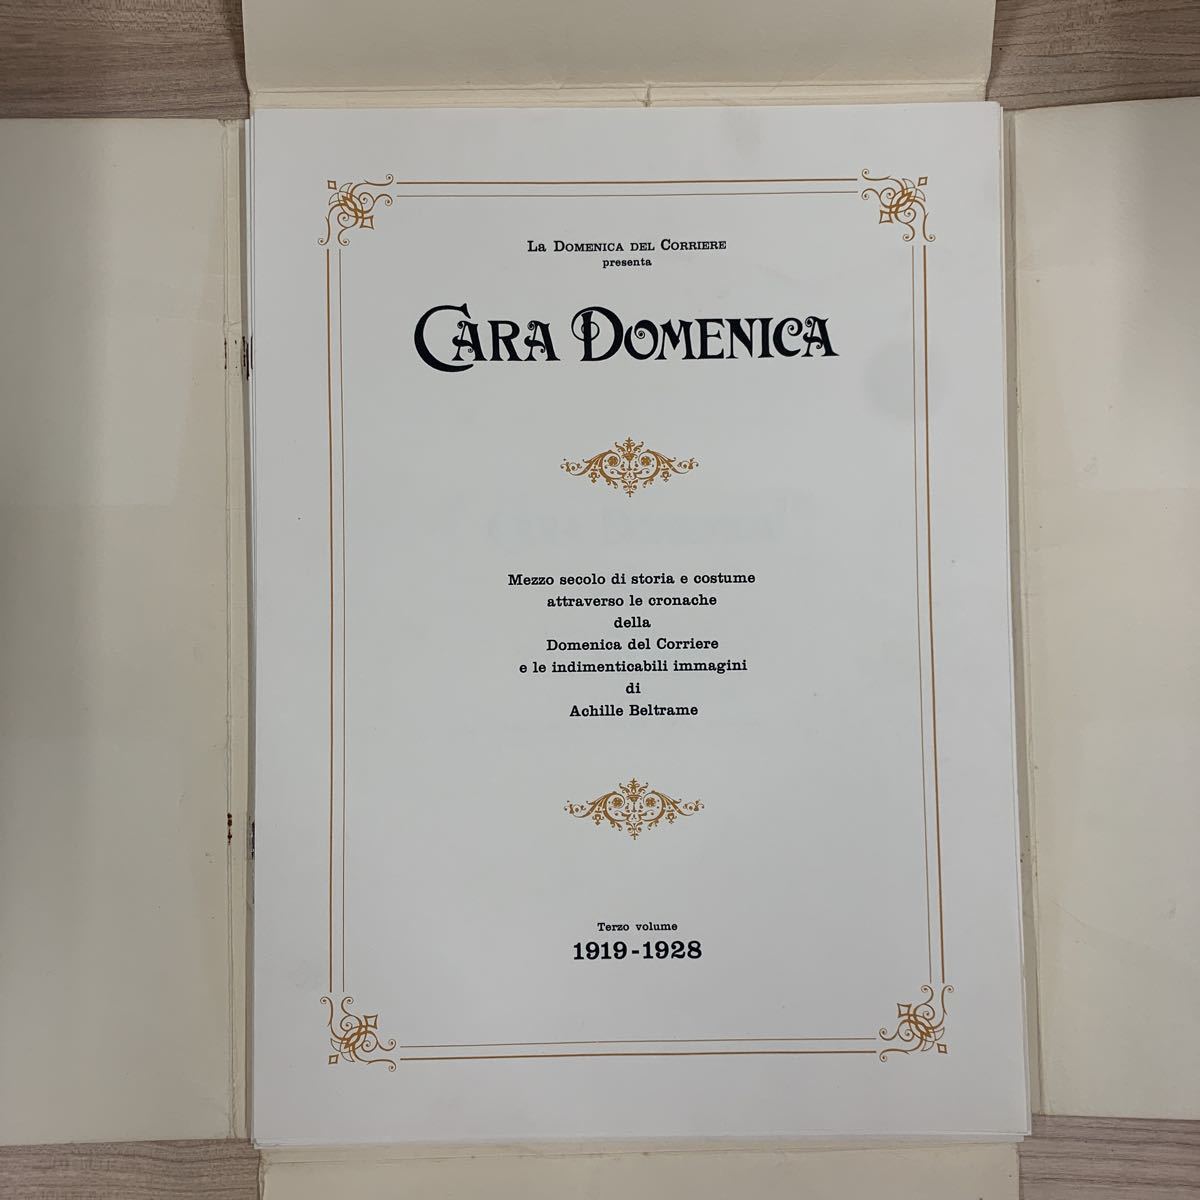 4-25-41 иностранная книга /CARA DOMENICA 1919-1928/ Италия / milano / Classic / Vintage / античный / переиздание /